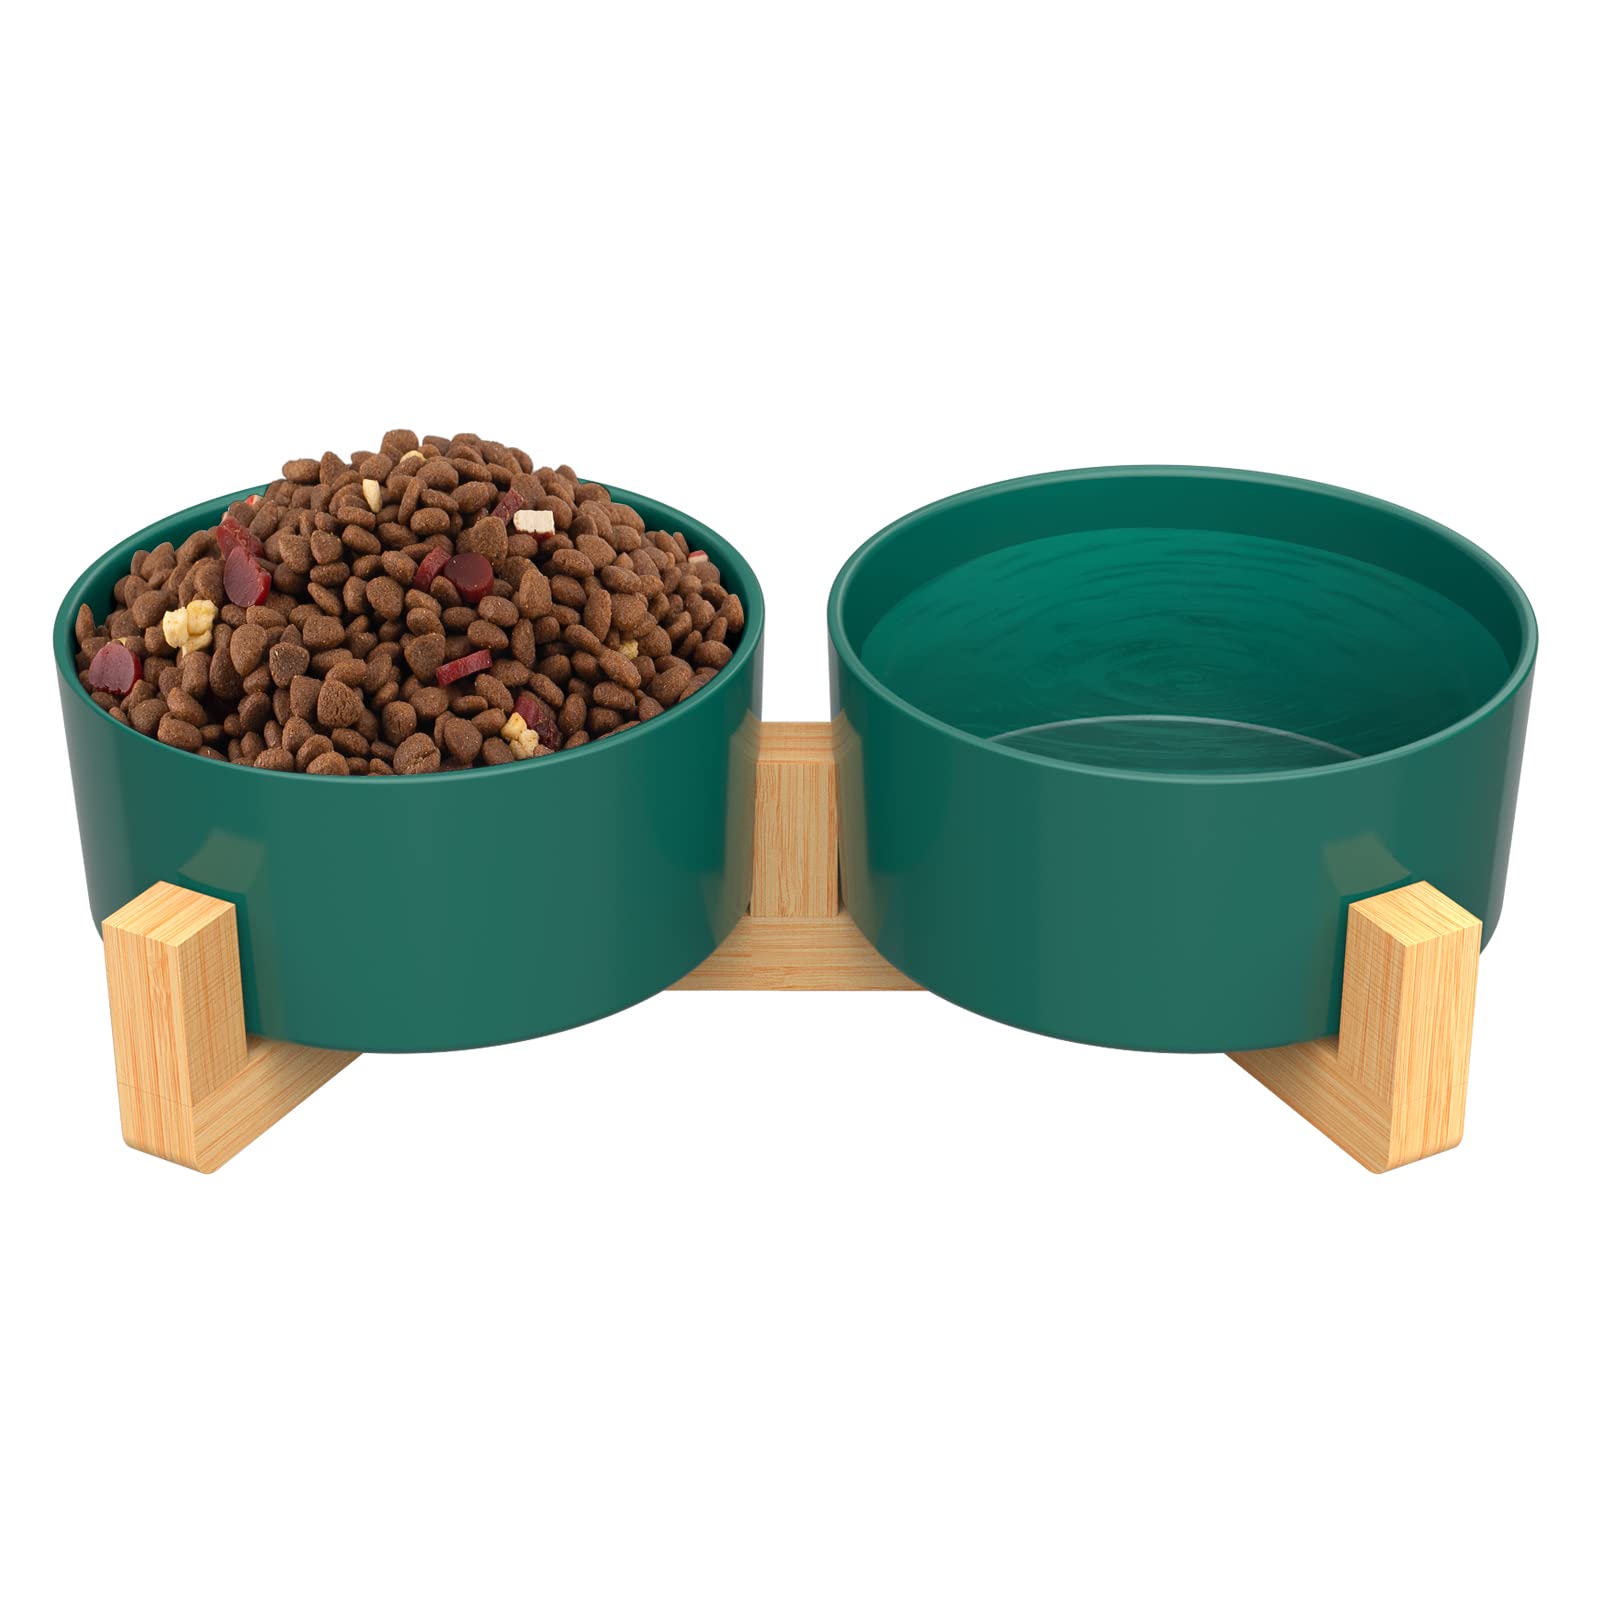 AirCover Keramiknapf für Hunde und Katzen mit Bambusständer, rutschfestes Haustier-Diner-Set, Futternapf oder Wassernapf für kleine, mittelgroße Hunde und Katzen (3,4 Tassen, Doppelbett, grün)